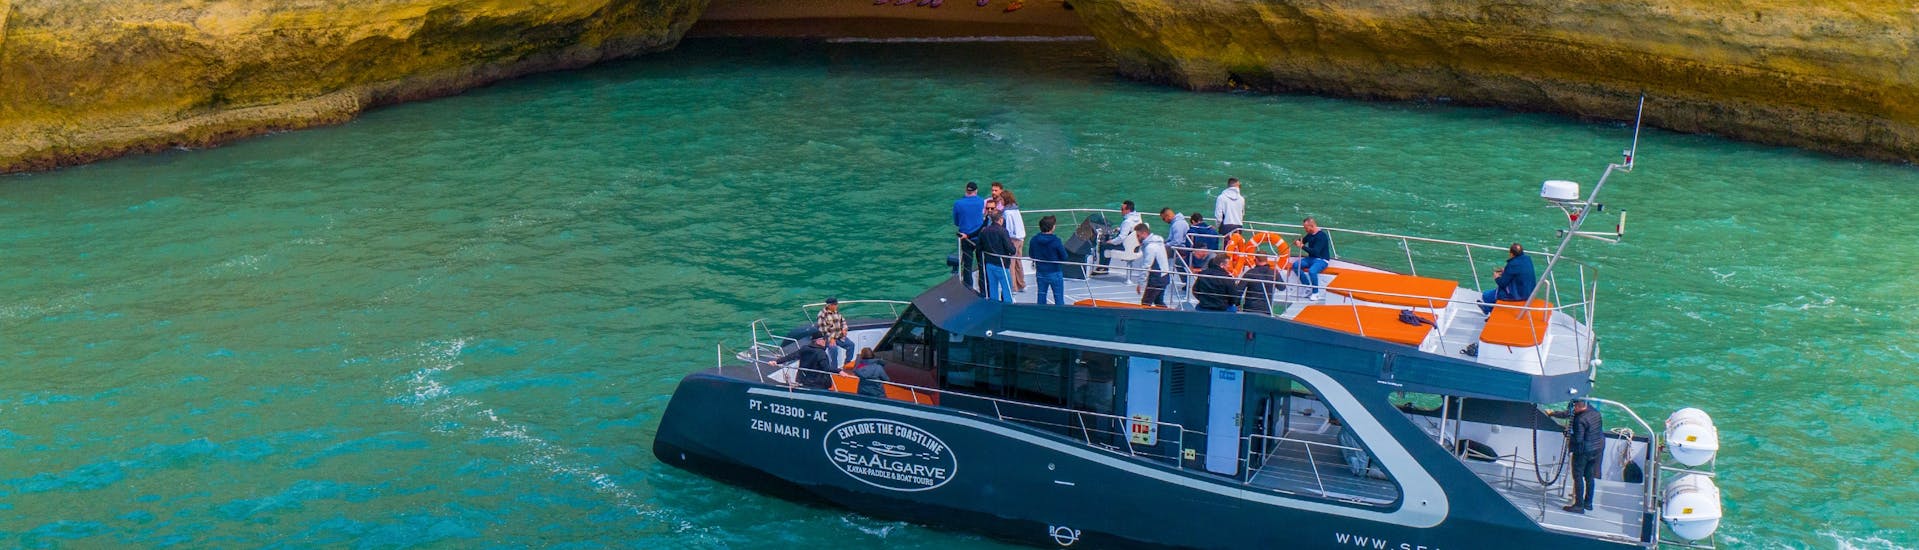 El catamarán operado por SeaAlgarve Albufeira se puede ver acercándose a la Cueva de Benagil durante la excursión en barco de Benagil.